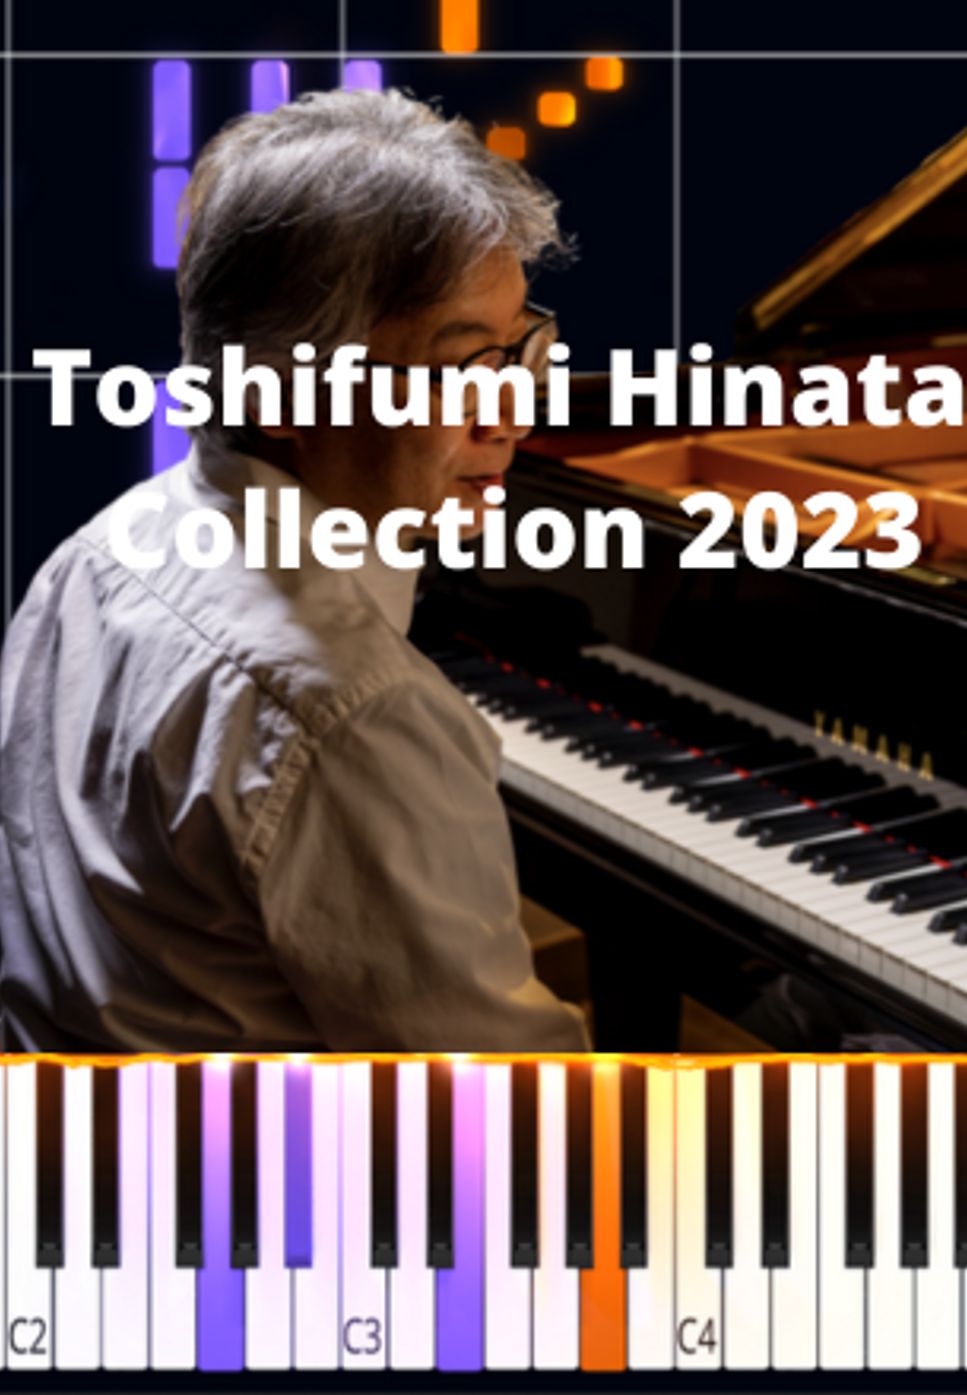 Toshifumi Hinata - Toshifumi Hinata Collection 2023 by Marco D.